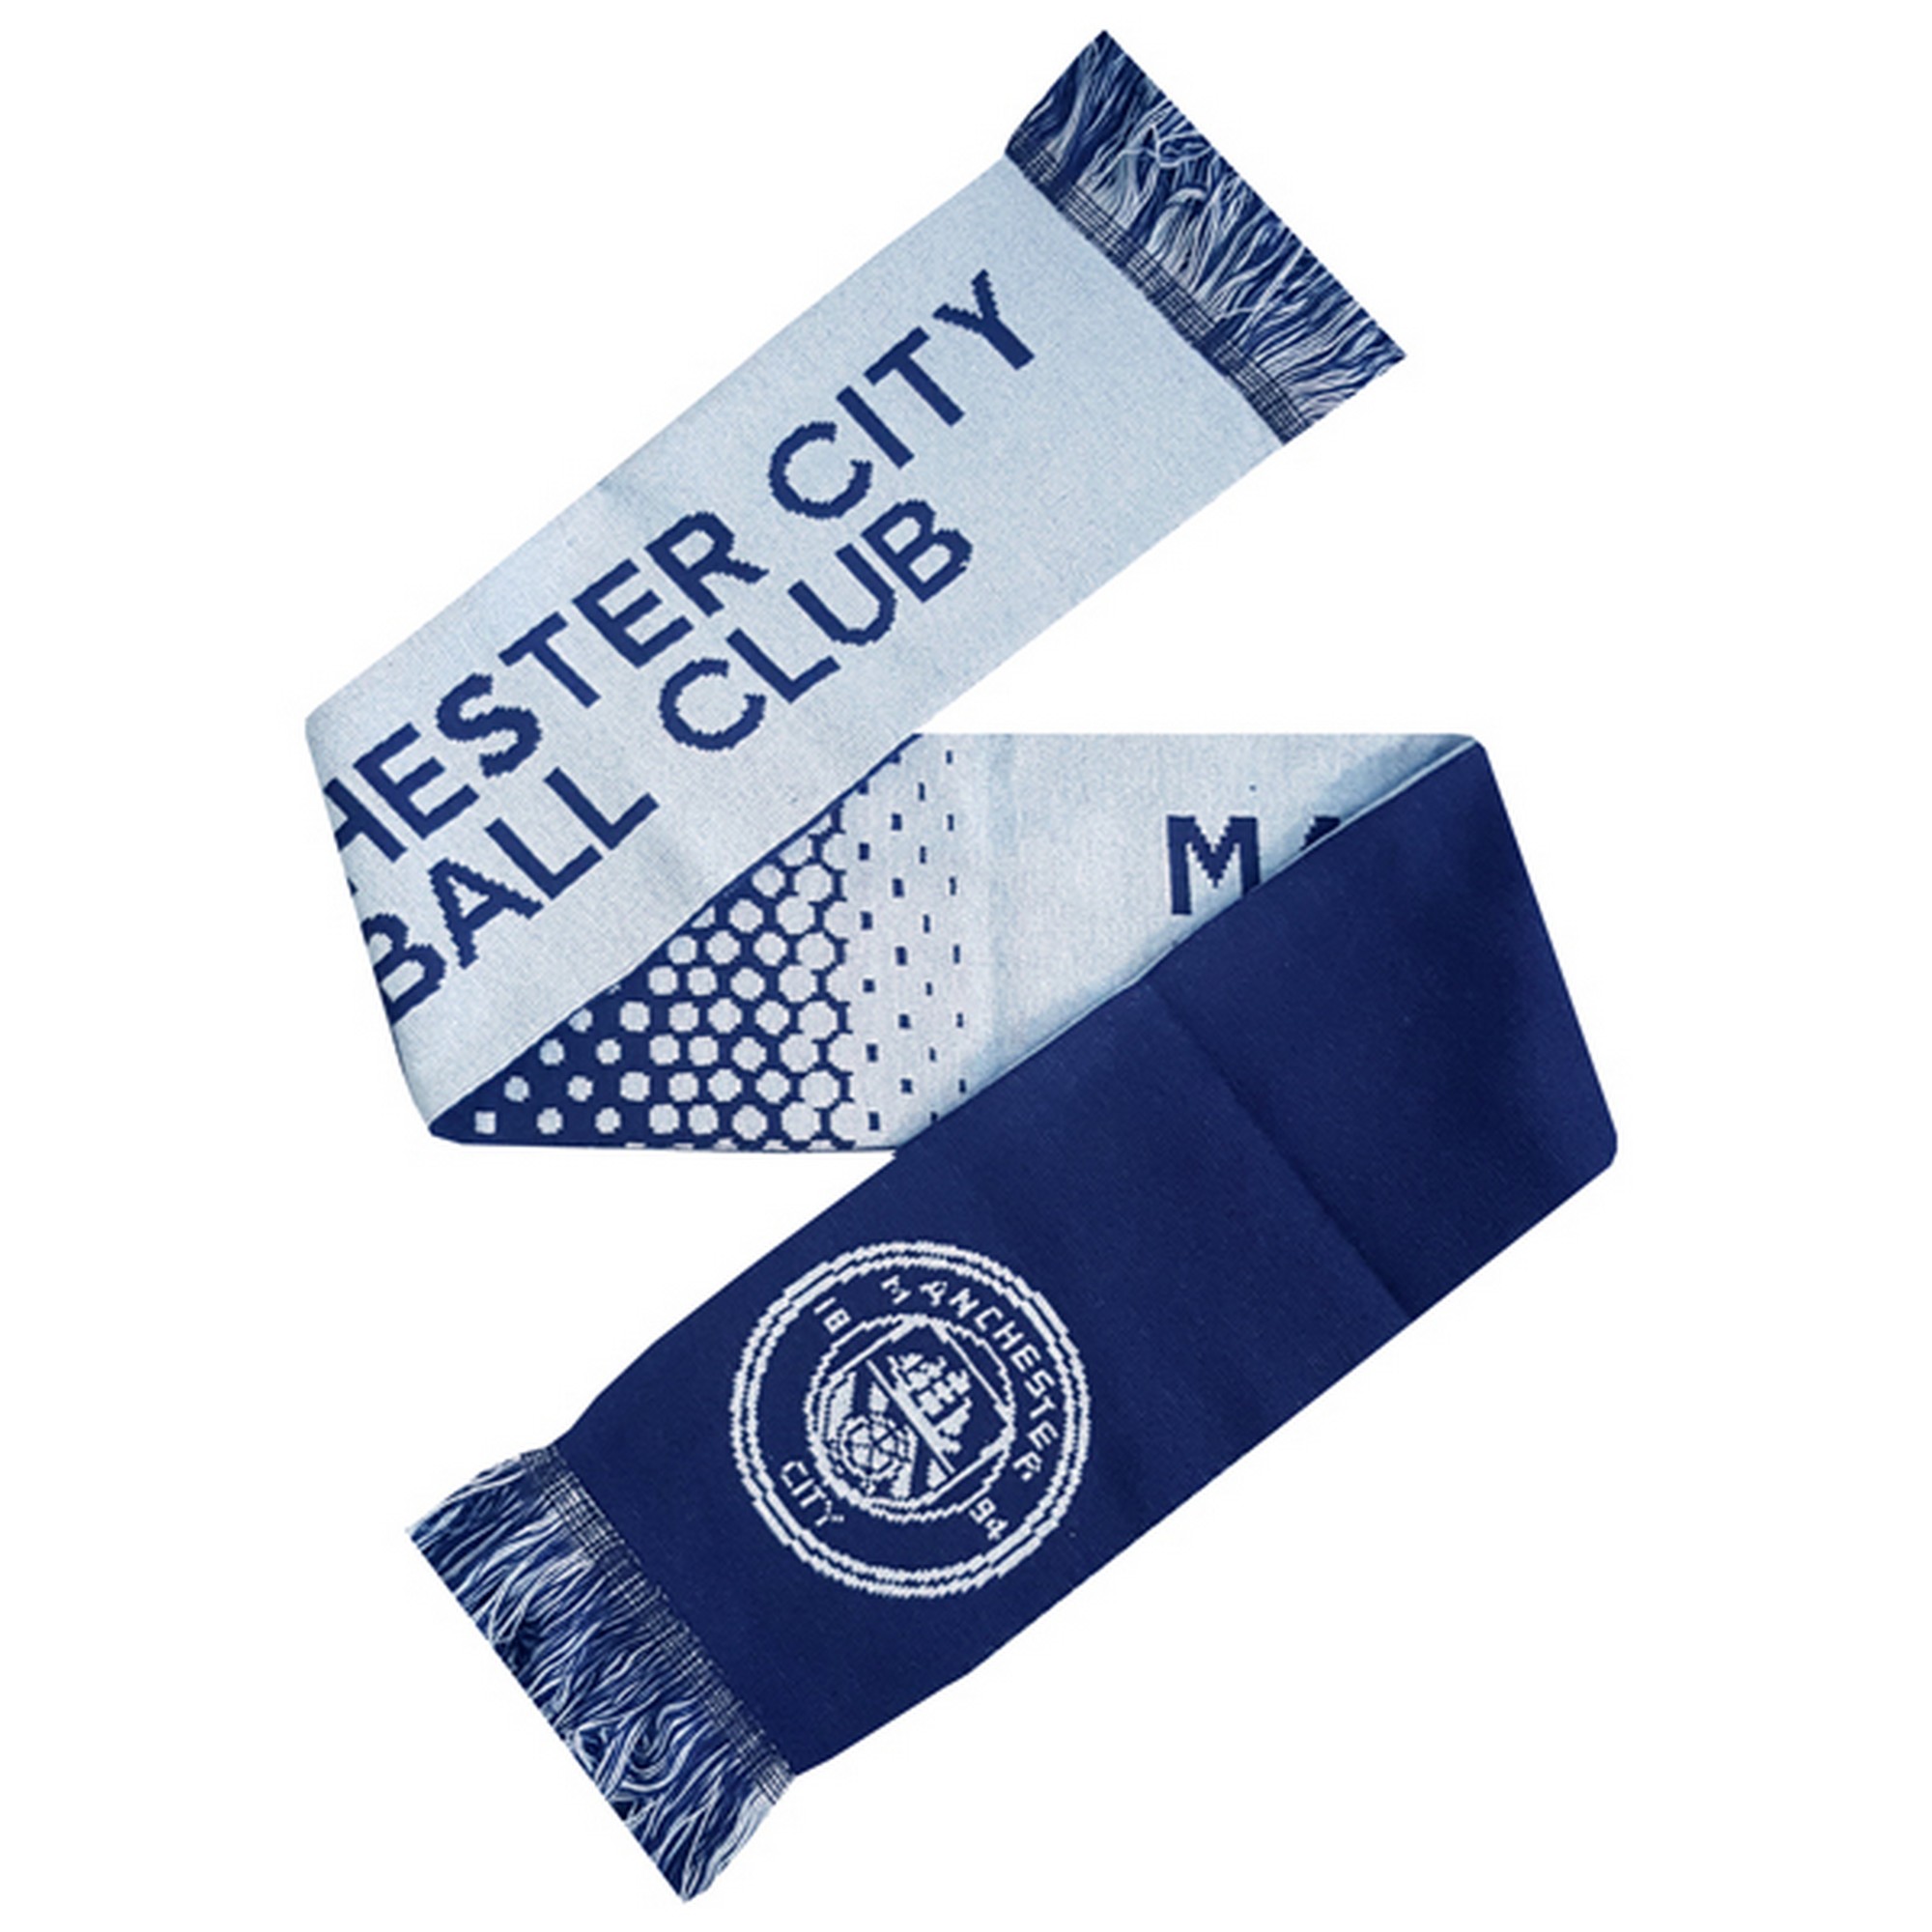 Bufanda Oficial Modelo Fade Football Crest Supporters Manchester City Fc (Blanco_azul)